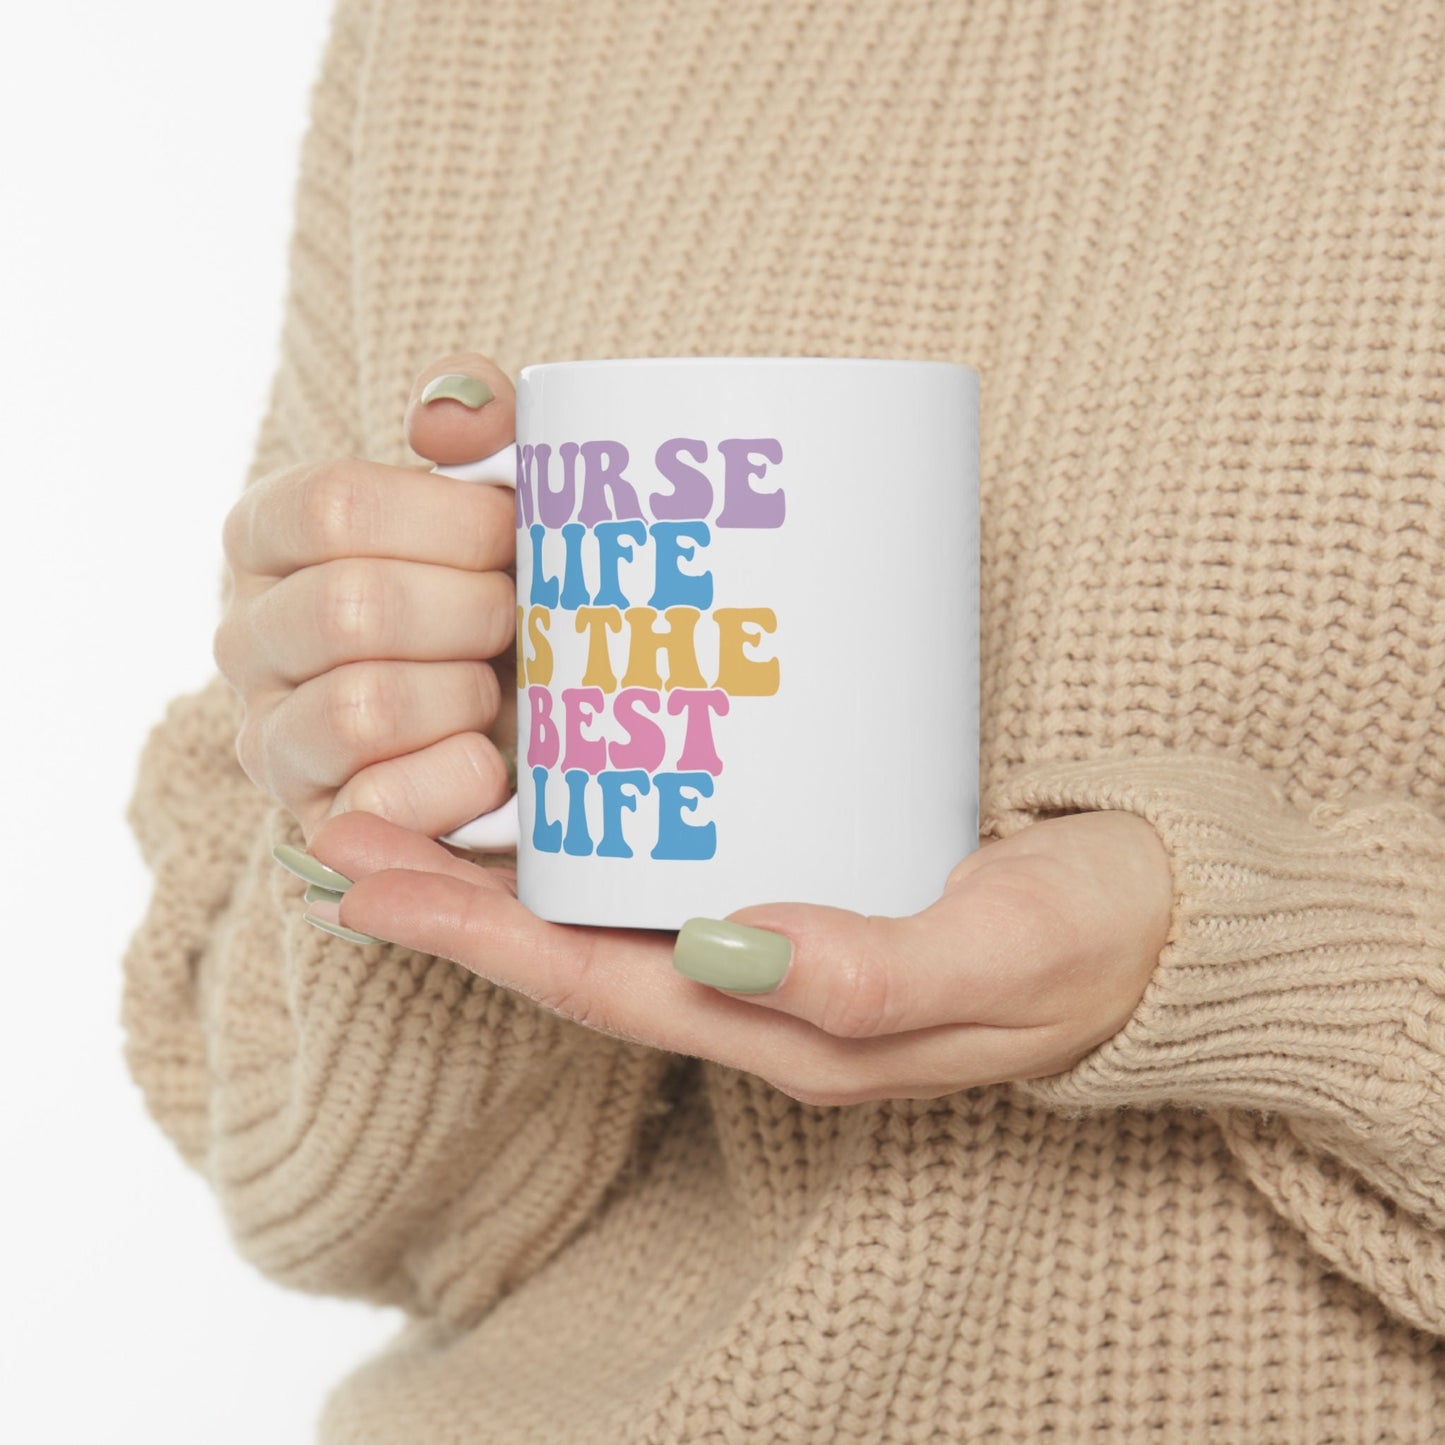 Nuse Life is the best life Mug, I love nurses Mug, Awesome gift Mug for nurses, gift Mug for a special nurse, Thank you gift Mug for nurses